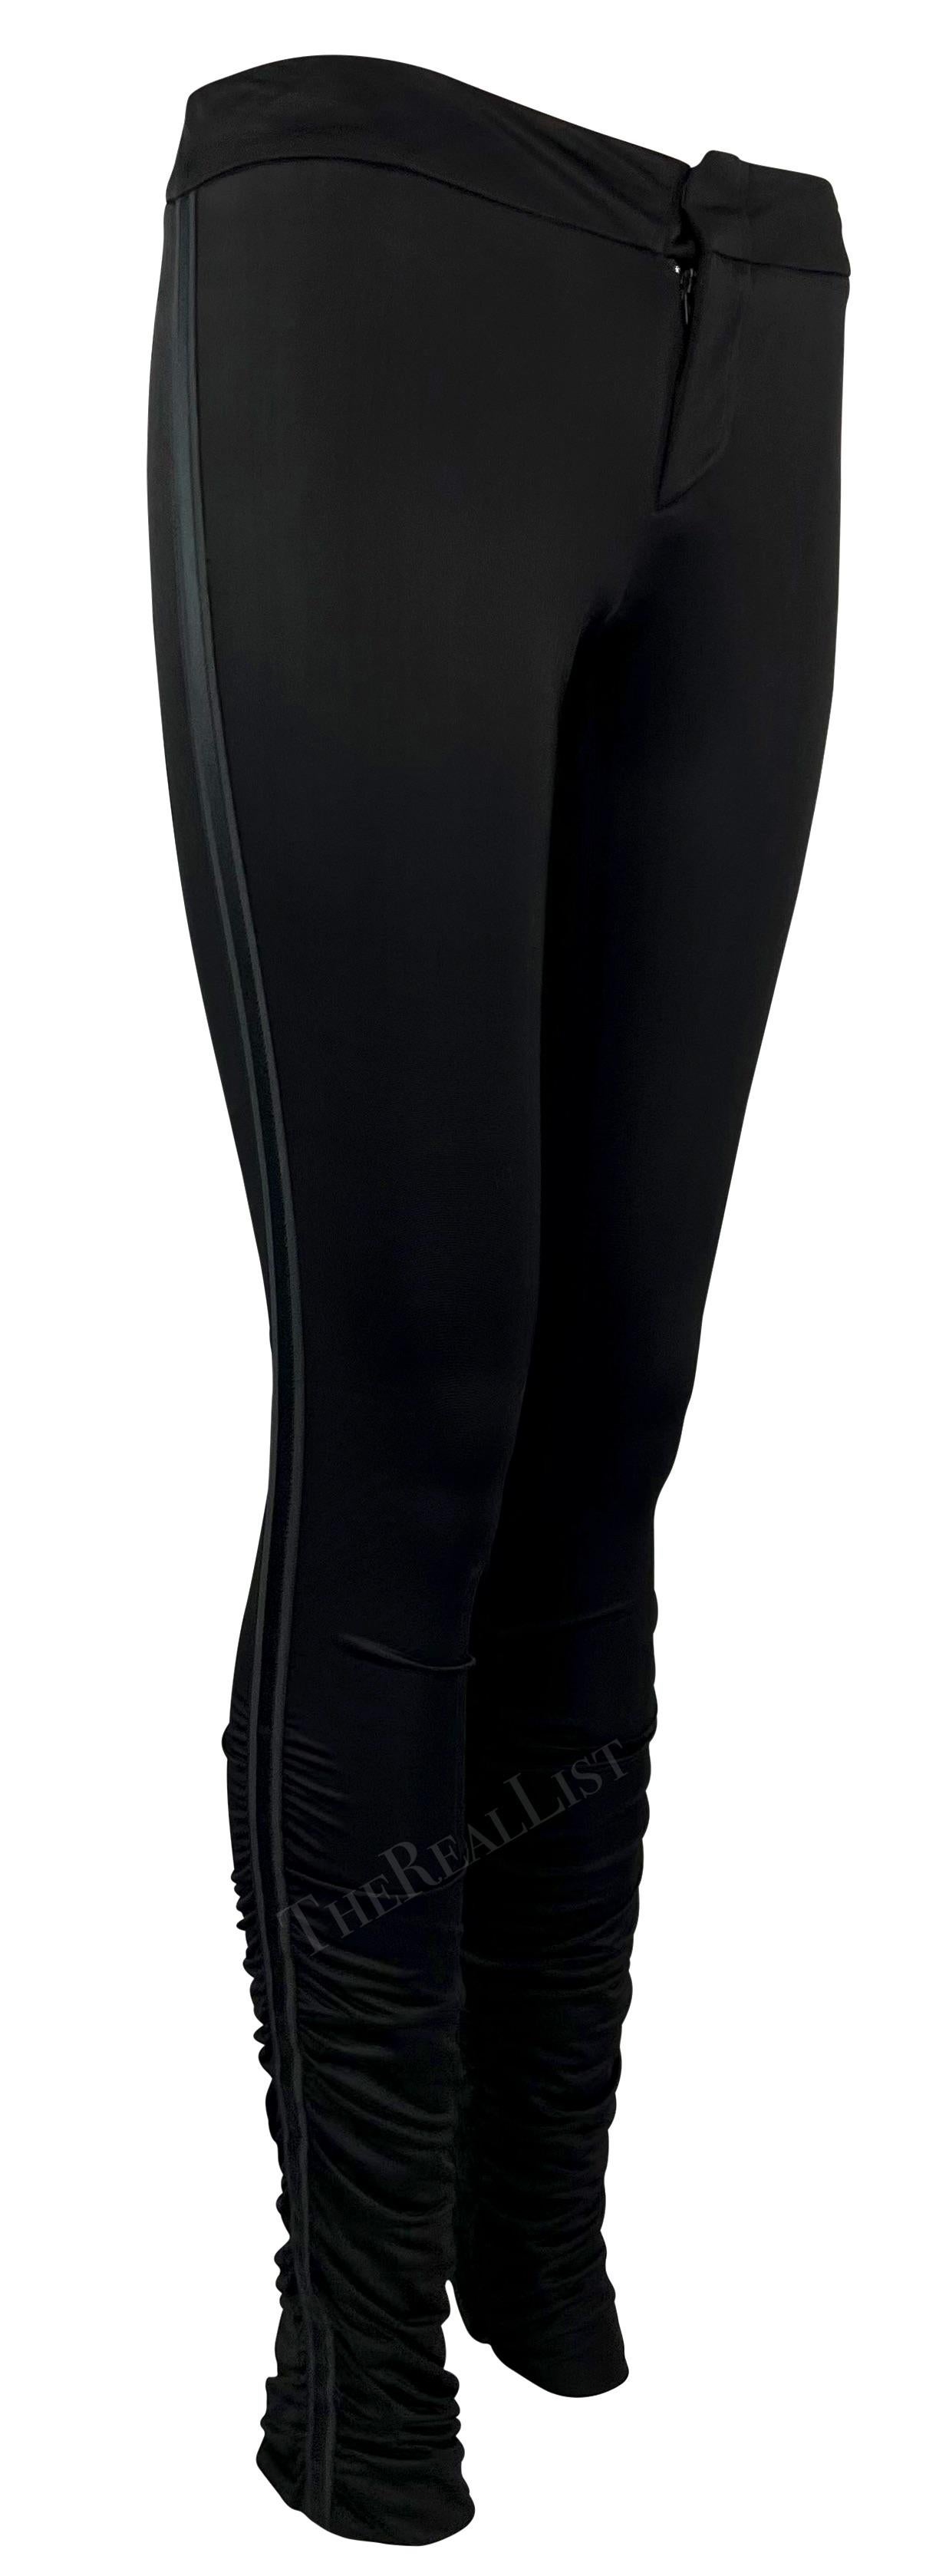 Ich präsentiere eine schwarze Gucci-Hose, entworfen von Tom Ford. Diese figurbetonte Satinhose aus der Herbst/Winter-Kollektion 2004 ist an den Waden gerafft und wird durch ein einfarbig gestreiftes Band an beiden Seiten vervollständigt. Diese